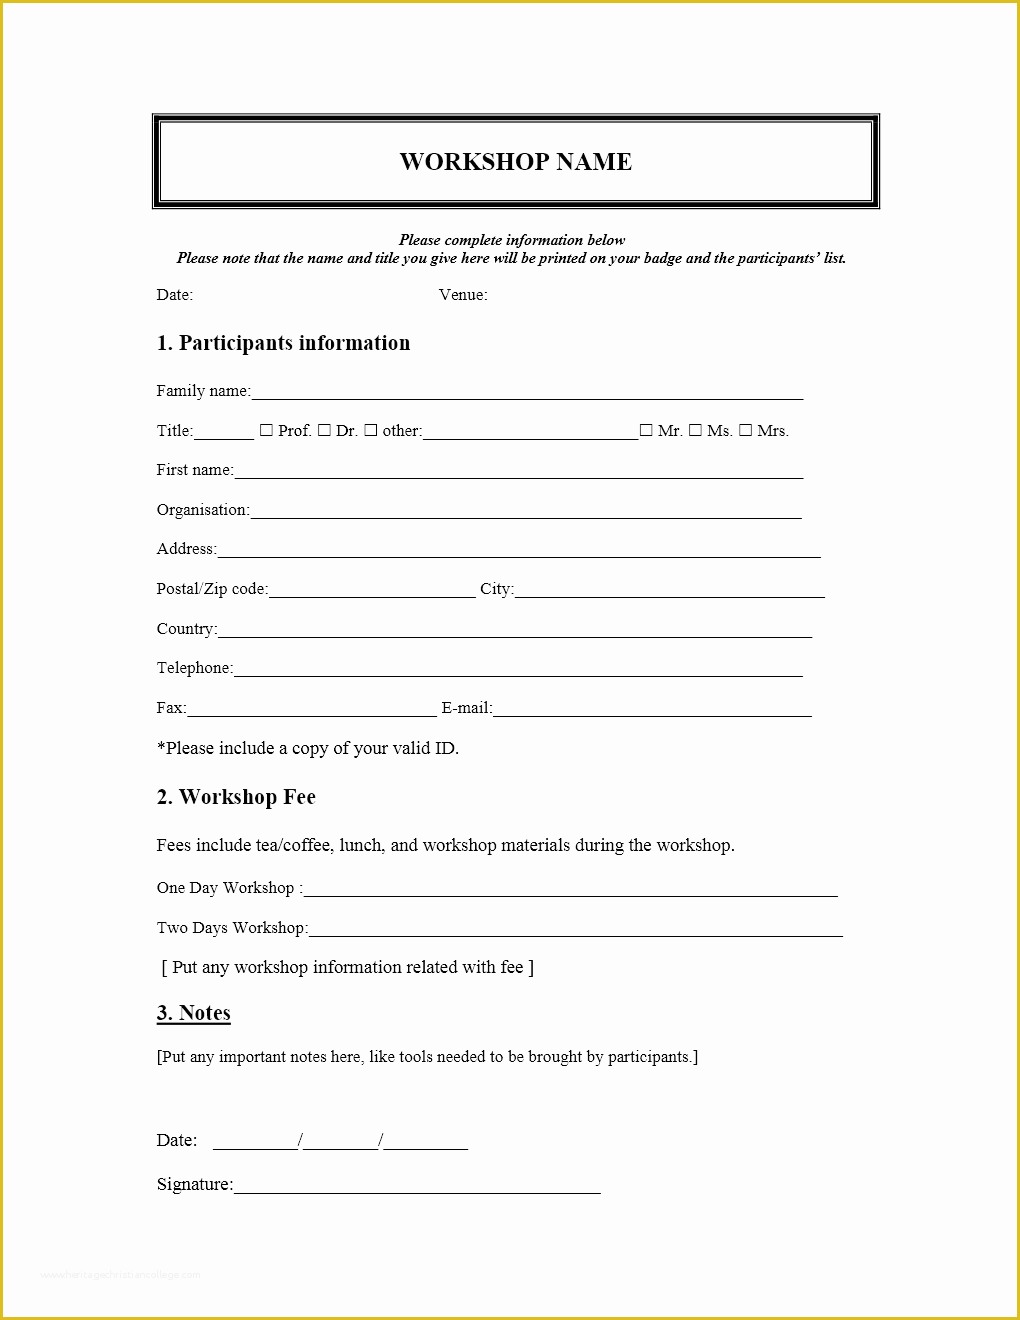 Conference Registration form Template Free Download Of Workshop Registration form